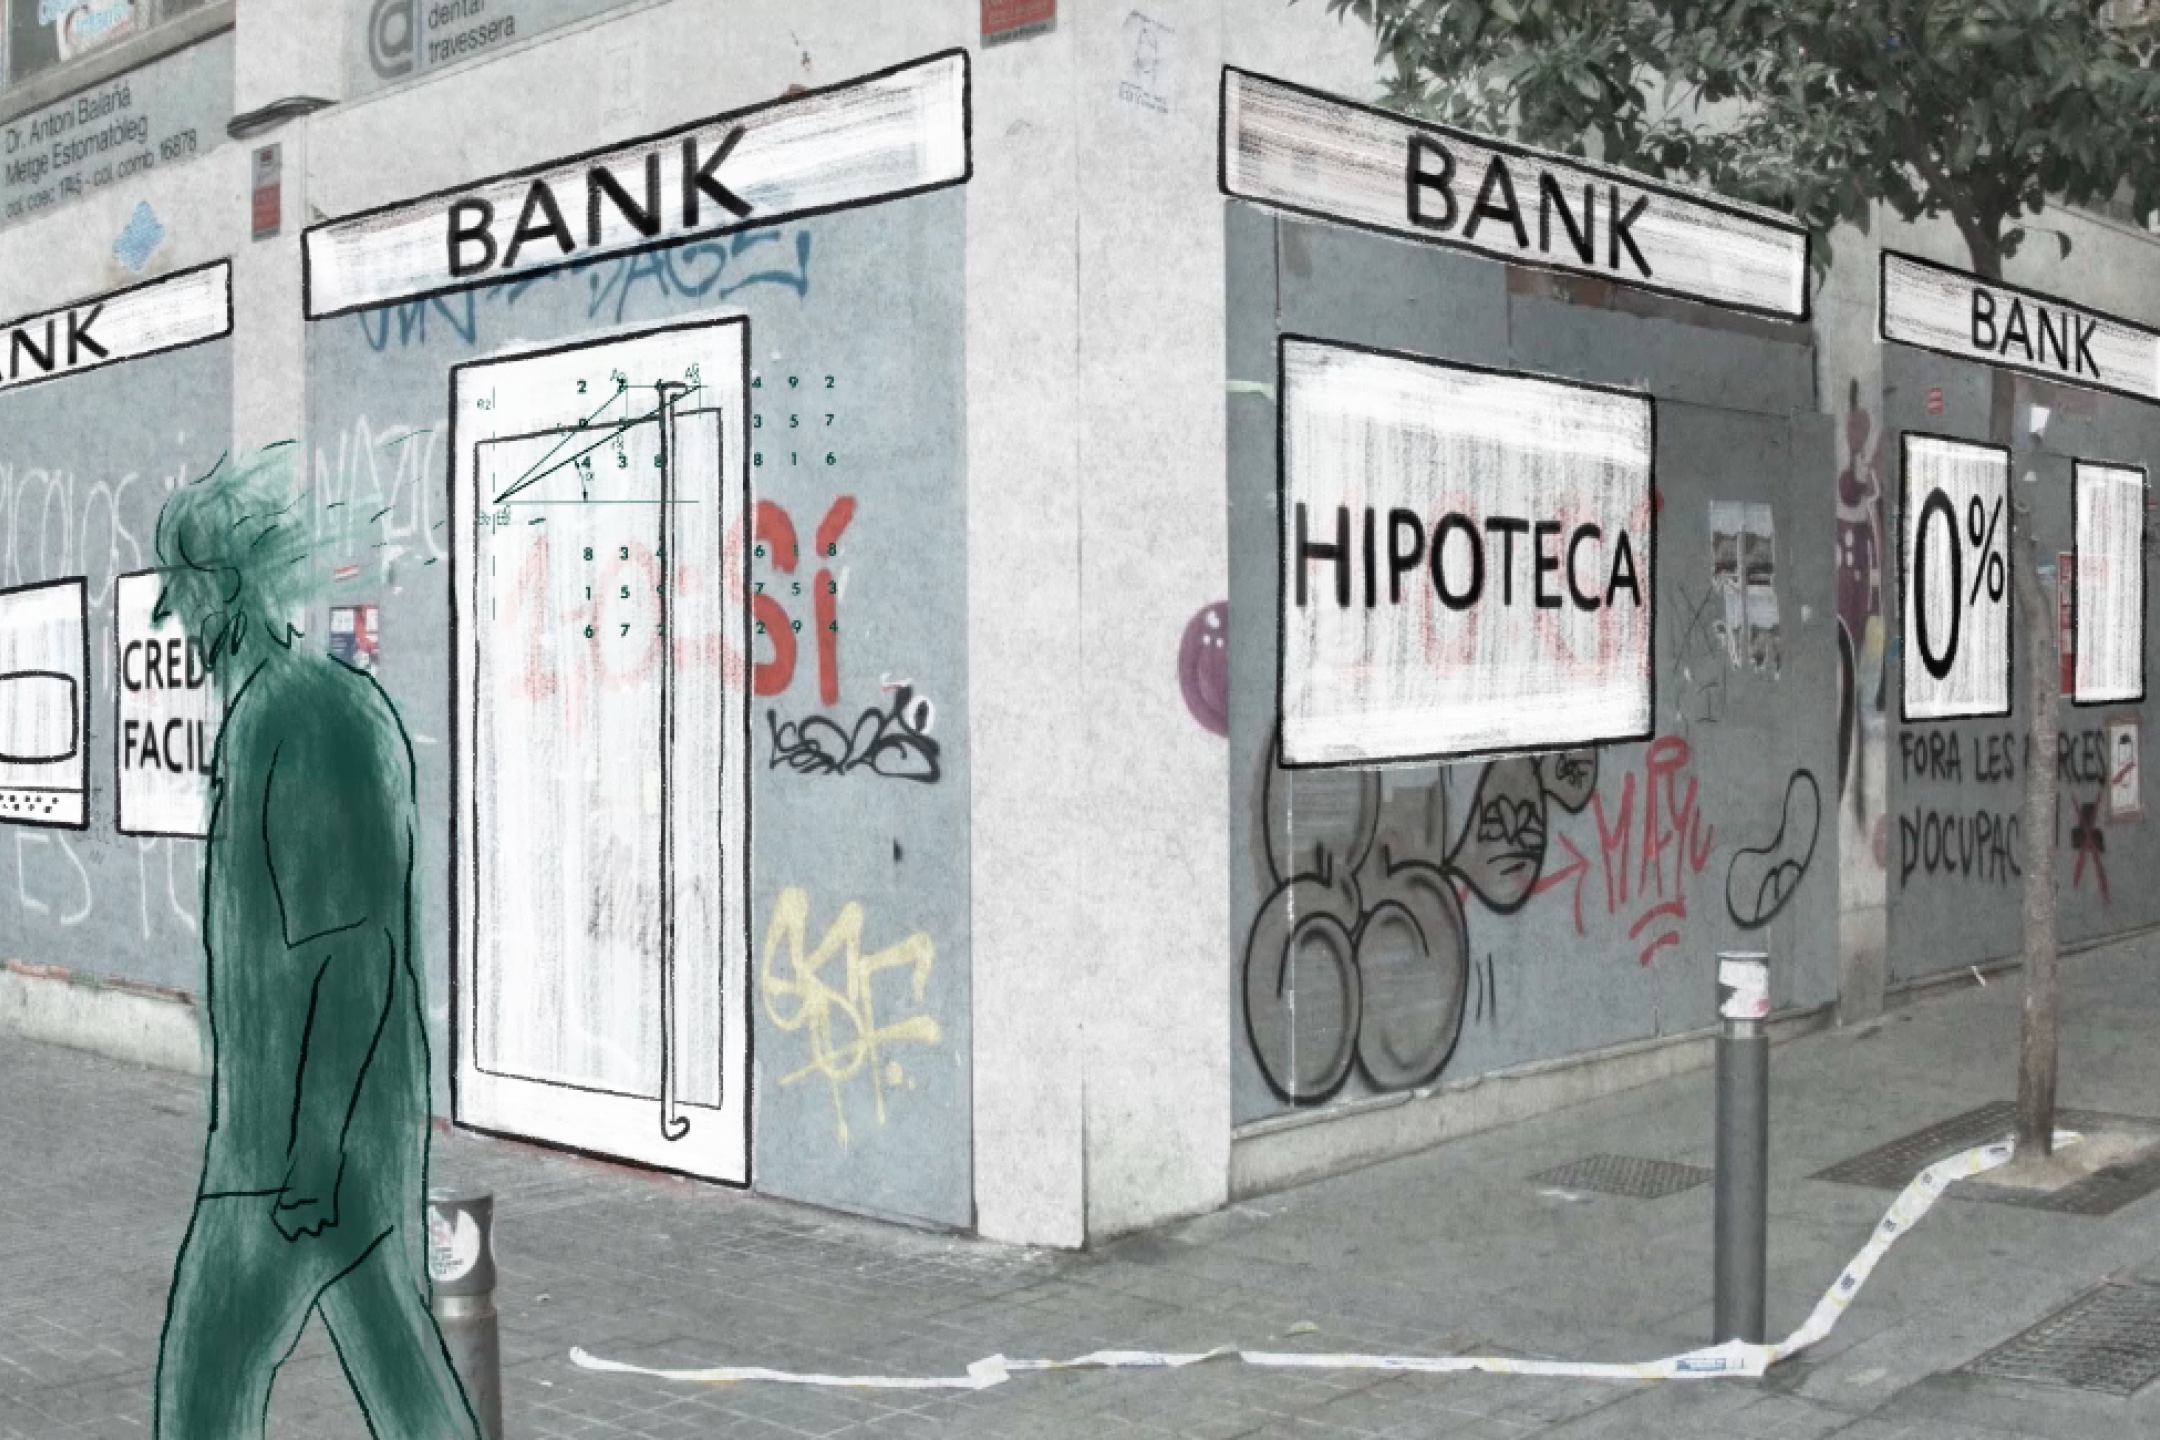 Zeichnung der Fassade einer Bankfiliale an einer Straßenecke. Im Vordergrund geht ein Mann vorbei. Links ist ein Geldautomat. Über der Tür und den Fenstern hängen mehrere Schilder mit dem Wort "Bank".